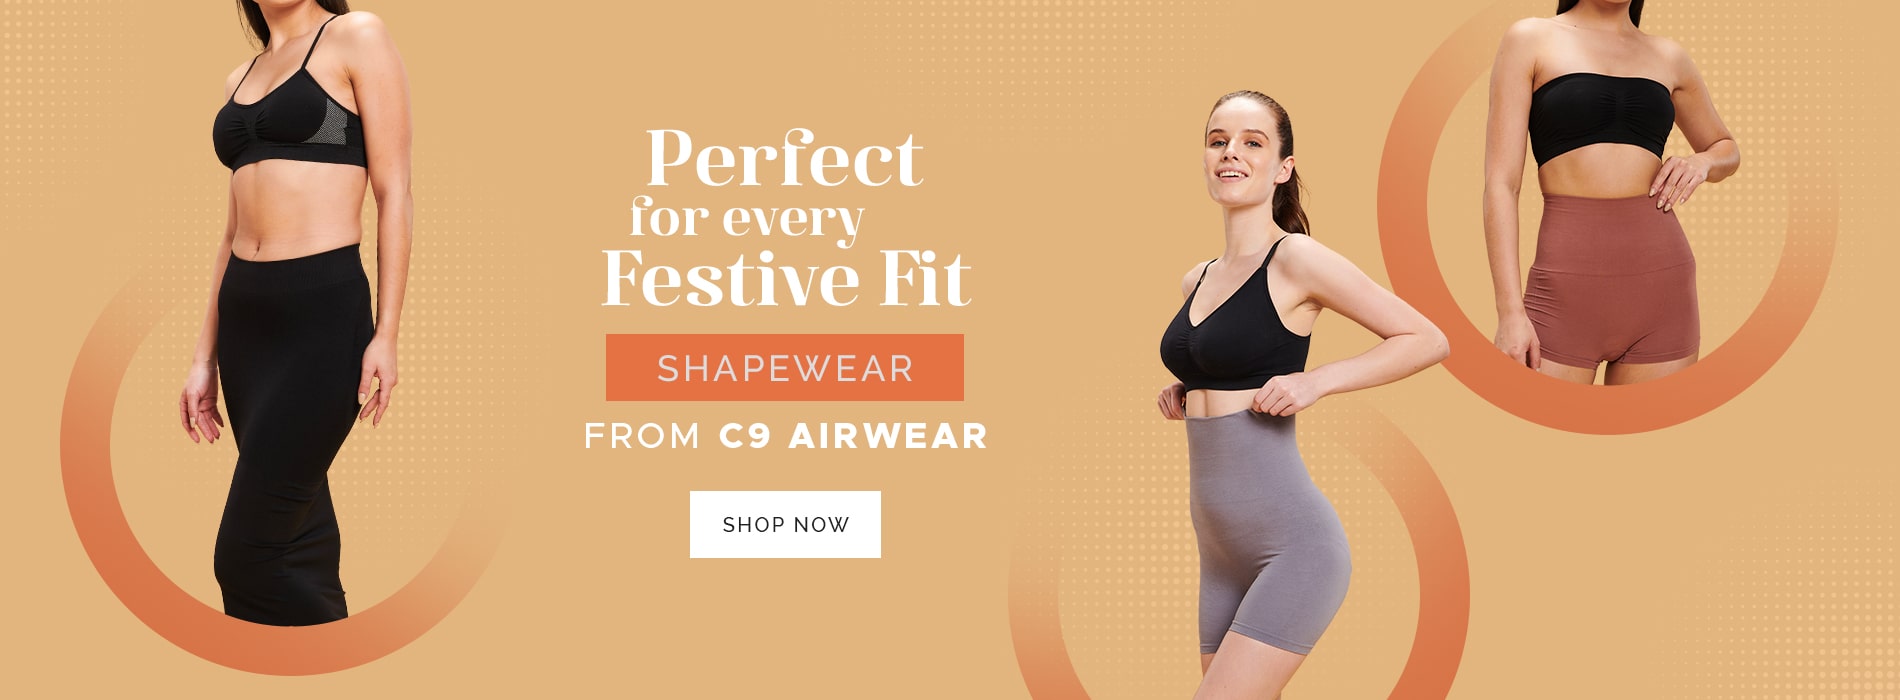 Buy Women's Camisoles Online in India – C9 Airwear